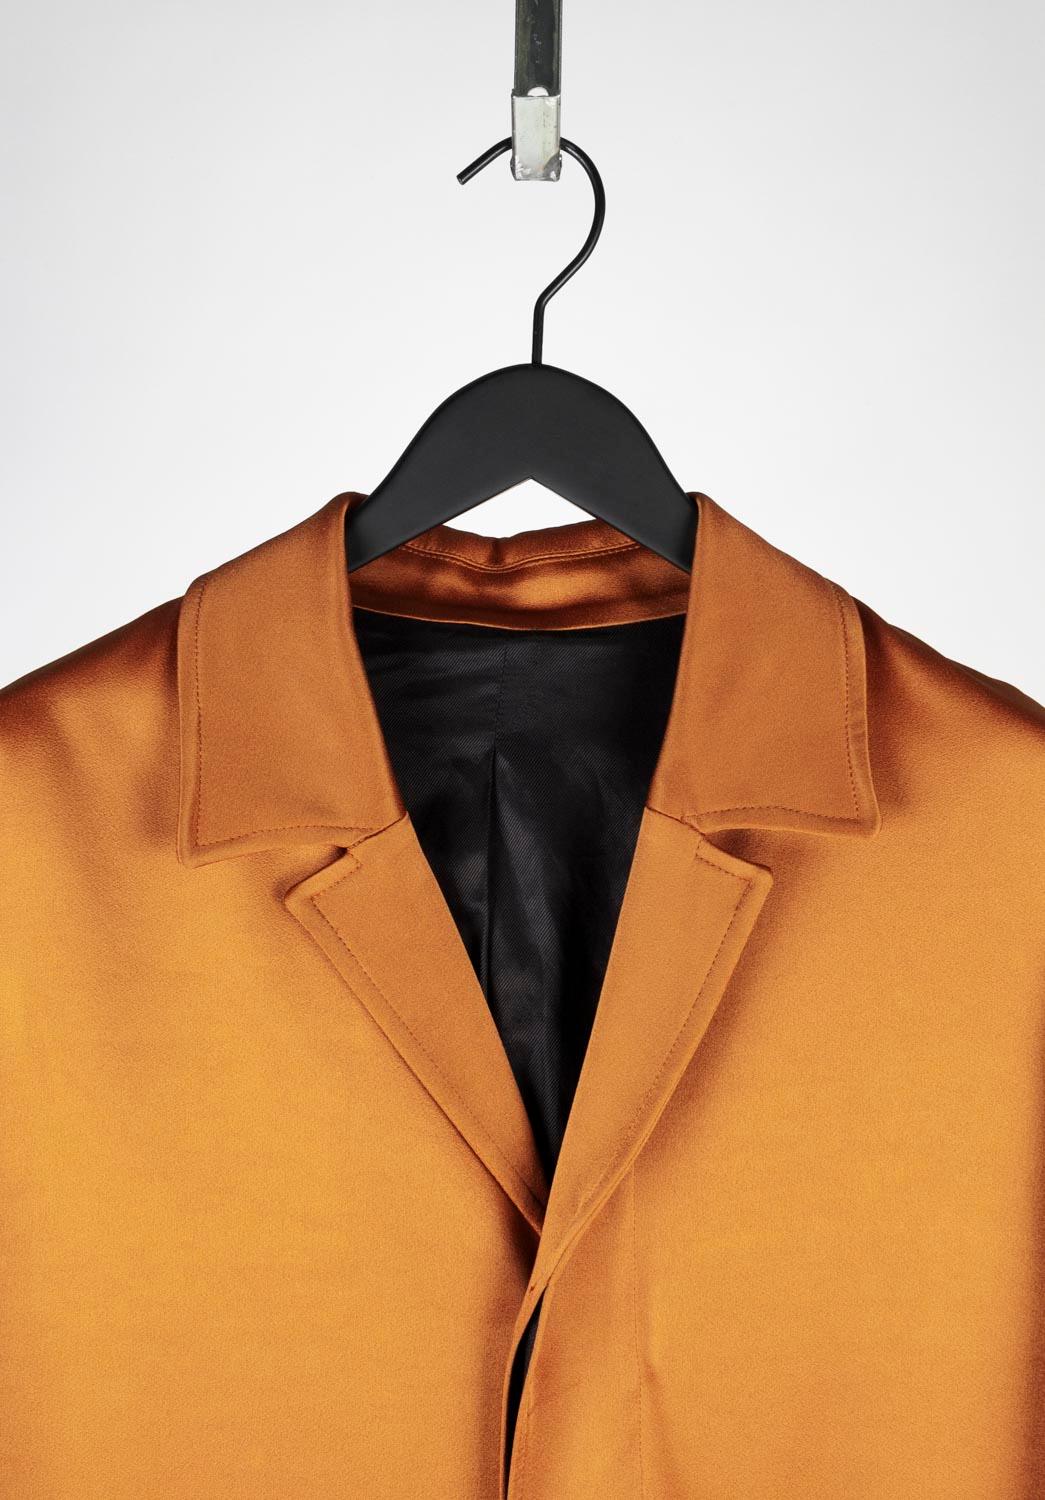 100% echter Ami-Mantel, S616
Farbe: Blasses Orange - die tatsächliche Farbe kann je nach Computerbildschirm ein wenig variieren
MATERIAL: 71% Acetat, 29% Viskose
Tag Größe: 46ITA, Medium fit.
Dieser Mantel ist von hervorragender Qualität. Bewertung